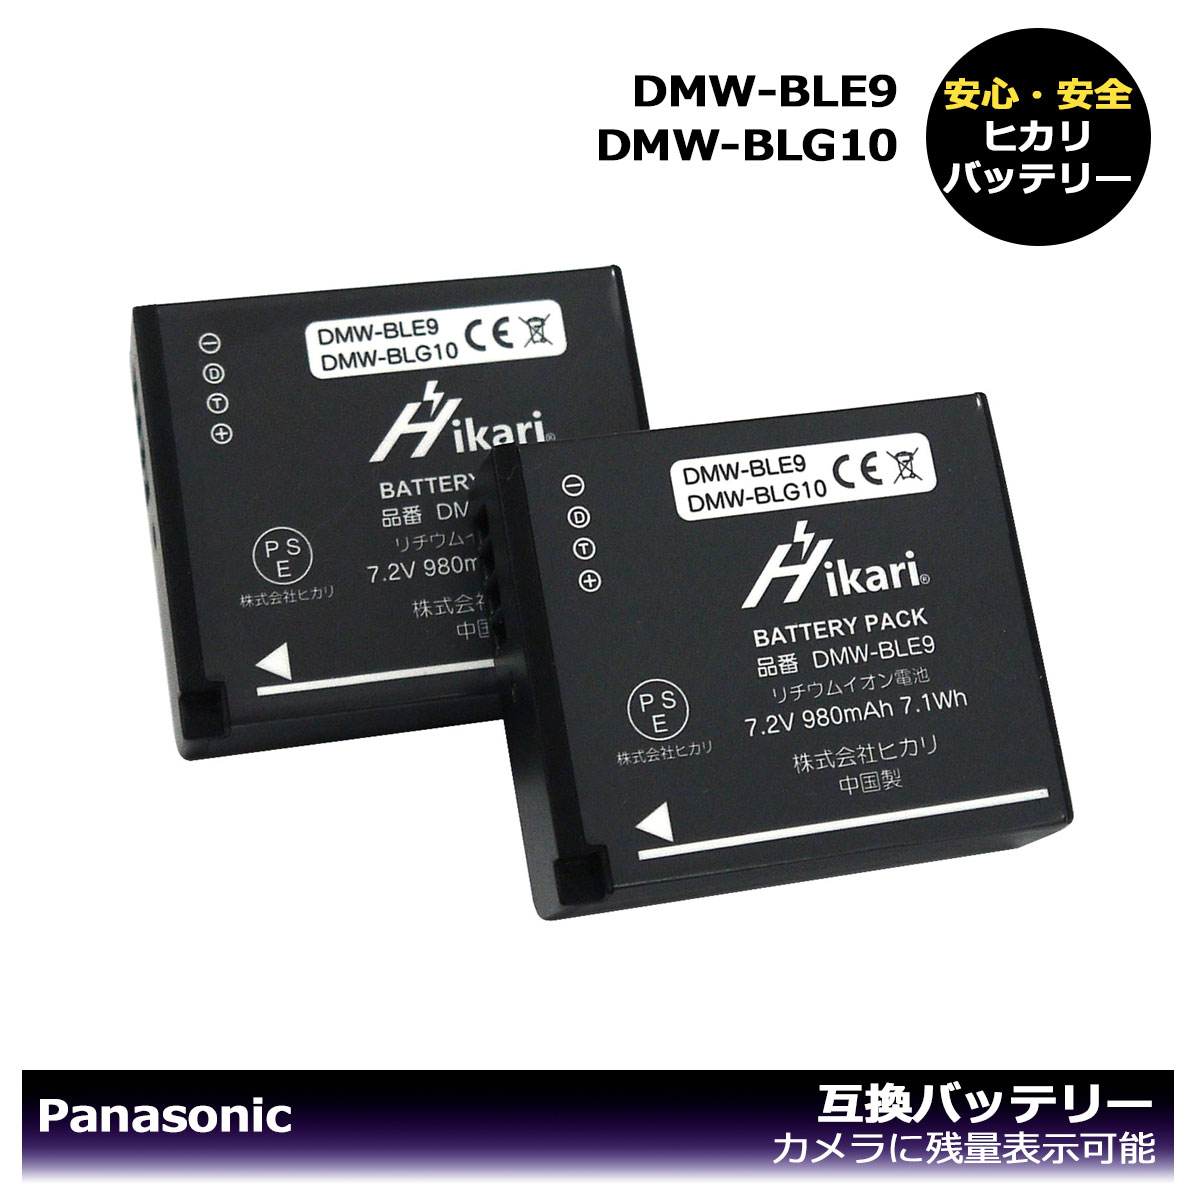 パナソニック DMW-BLE9 / DMW-BLG10 大容量シリーズ Panasonic 互換バッテリー 2個セット DMC-GF5XT / DMC-GF5XW / DMC-GF6 / DMC-GF6K / DMC-GF6R / DMC-GF6T / DMC-GF6W / DMC-GF6X / DMC-S6…